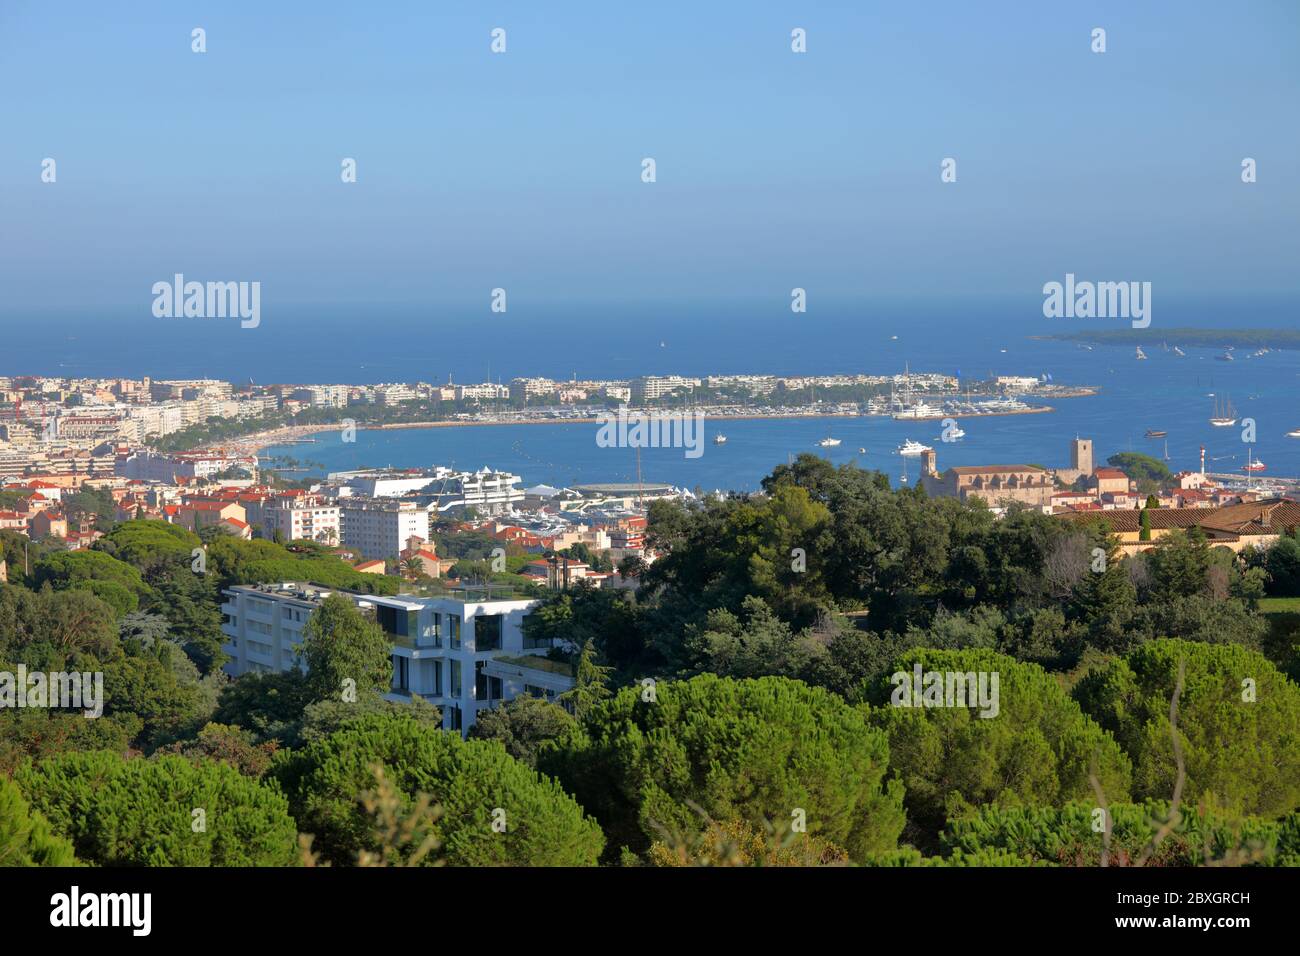 Cannes, France - 26 septembre 2019 : vue aérienne sur la baie de Cannes et le paysage urbain. La ville est connue pour son association avec les riches et les célèbres, ses hôtels et restaurants de luxe, et pour plusieurs conférences Banque D'Images